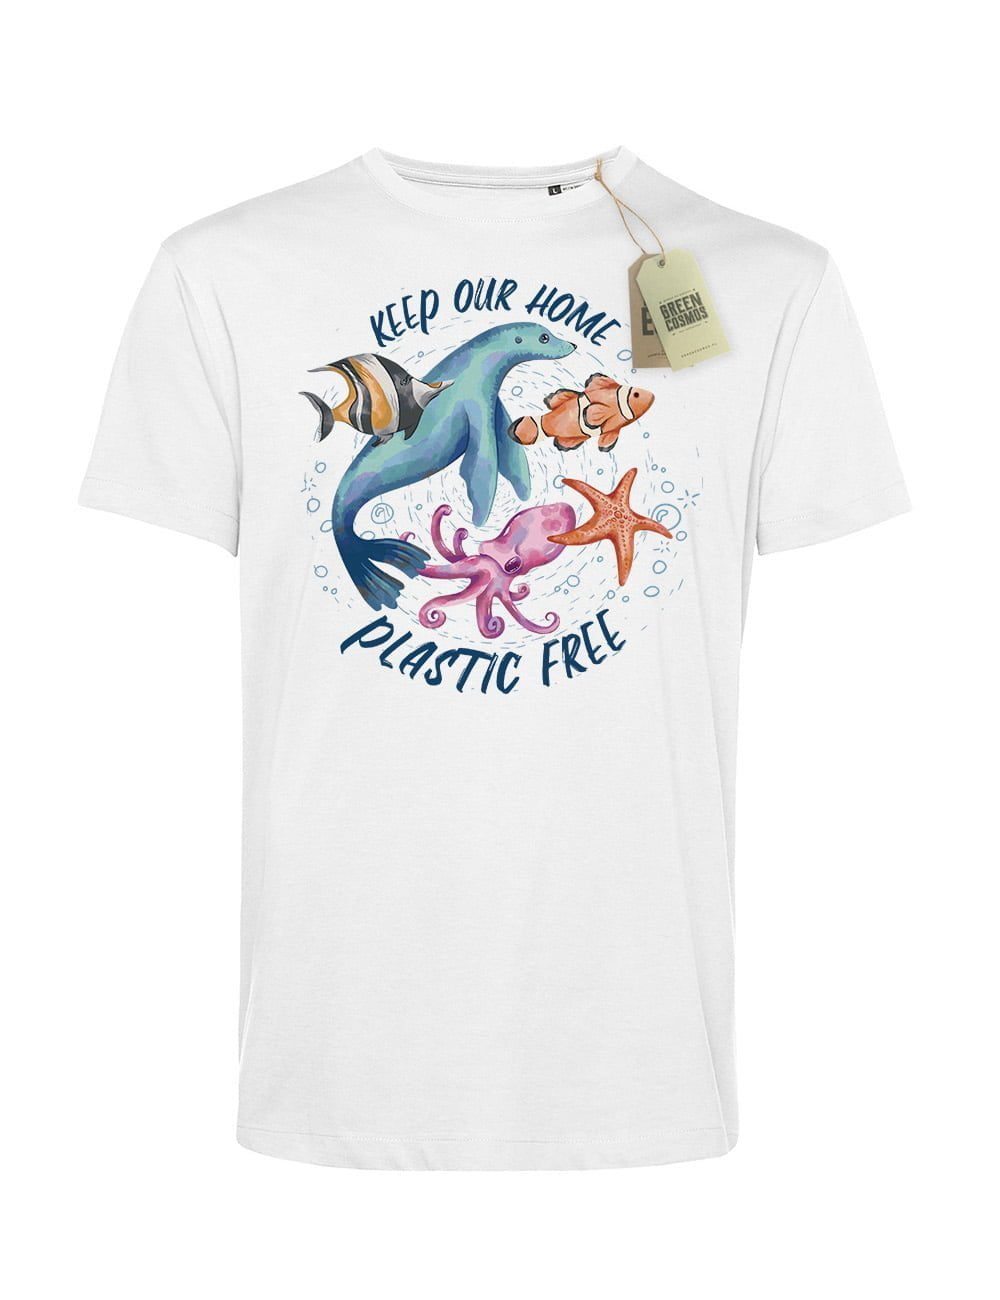 SEA PLASTIC FREE koszulka